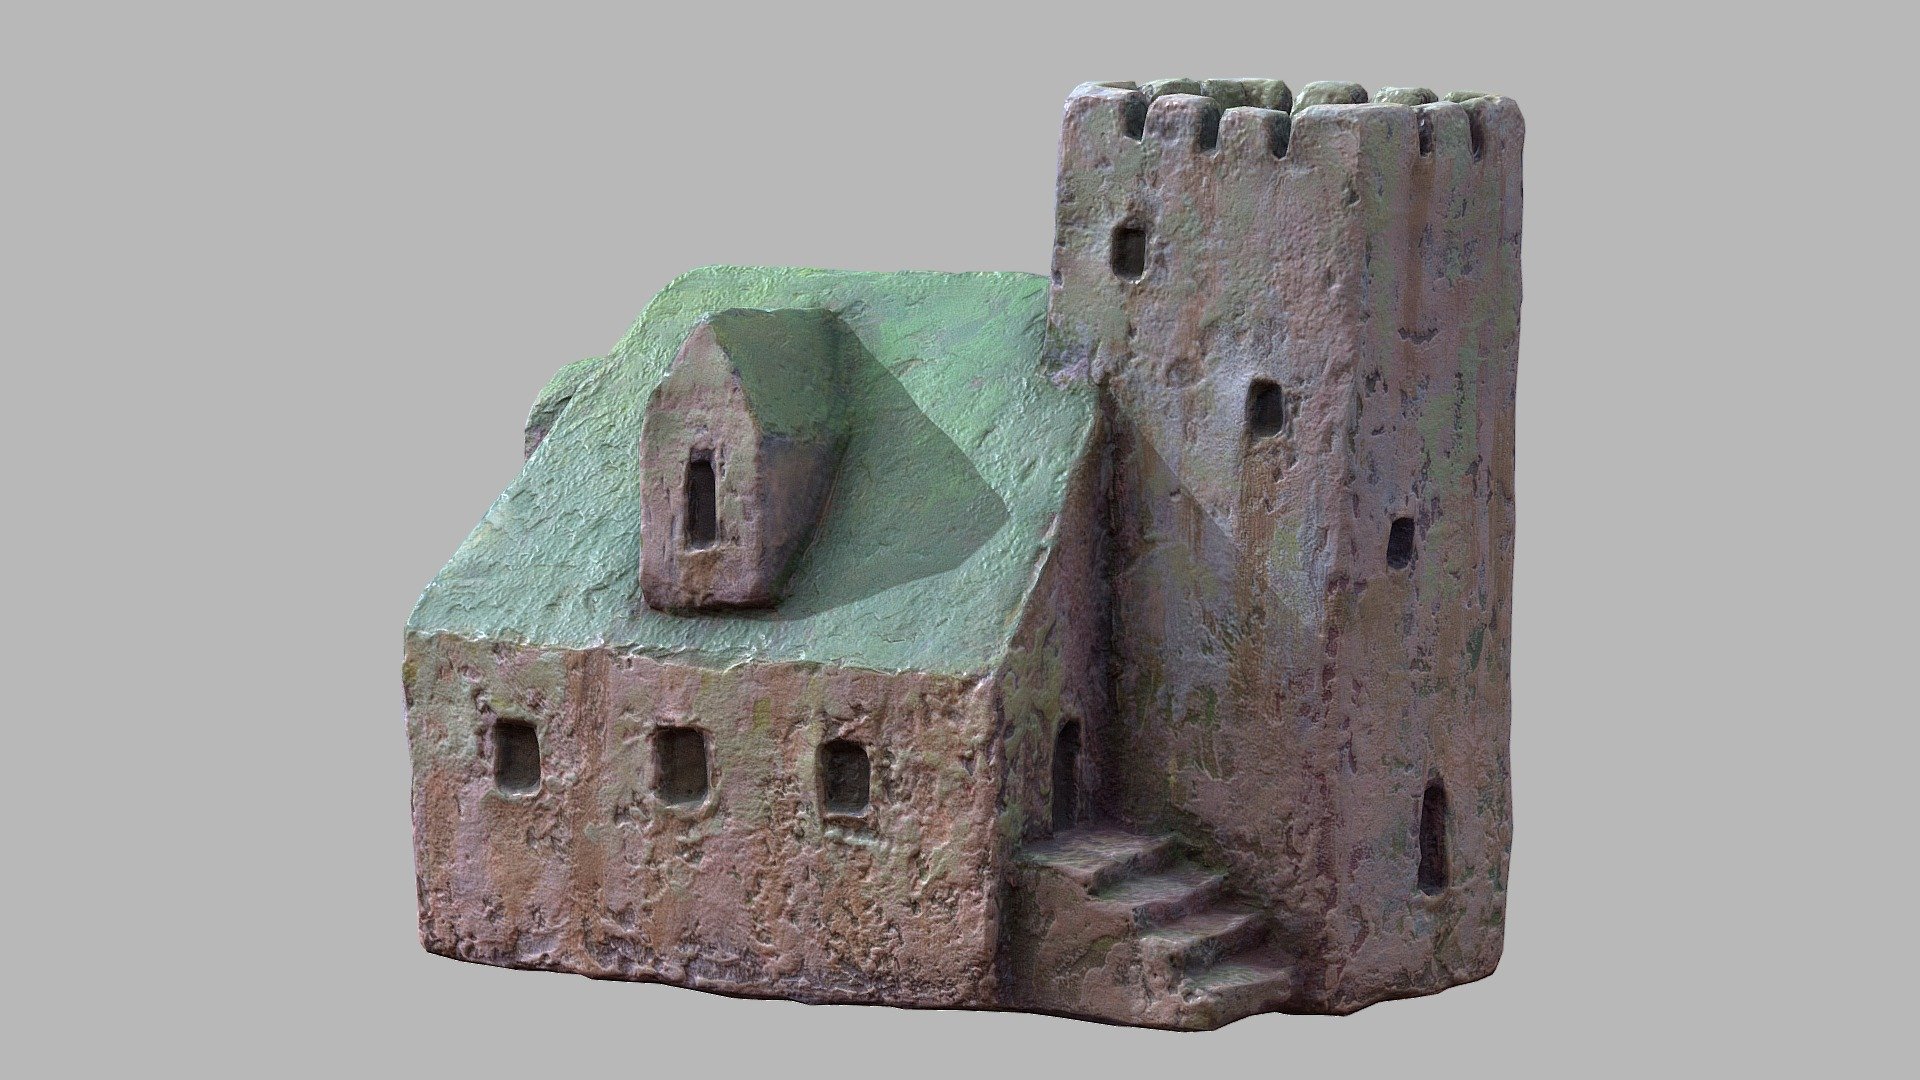 Castle miniature